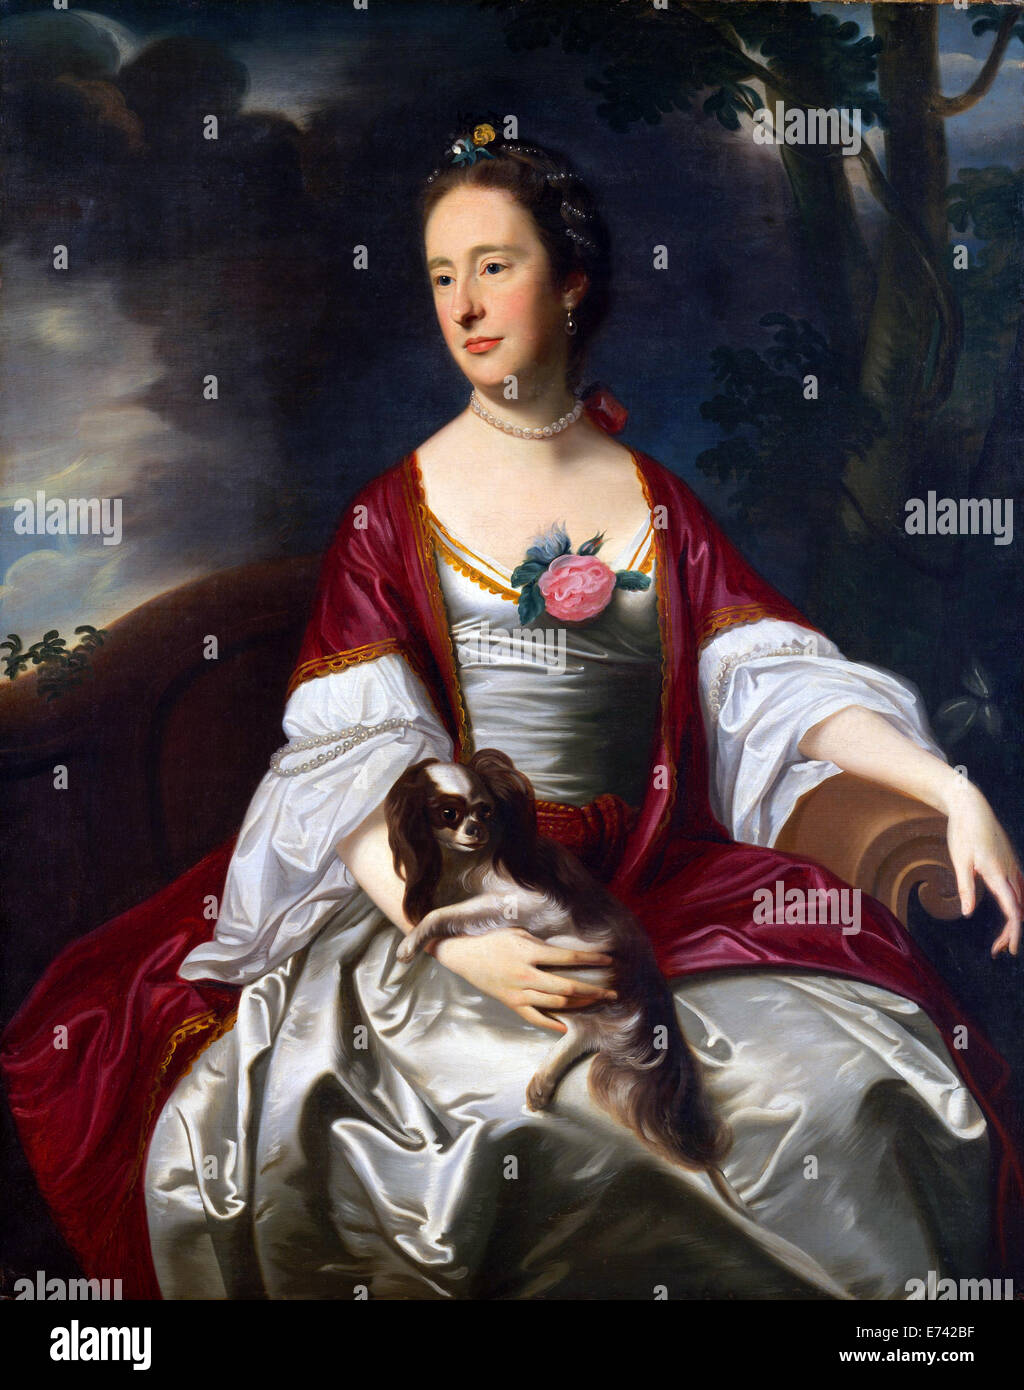 La Sra. Jerathmael Bowers - por John Singleton Copley, 1763 Foto de stock